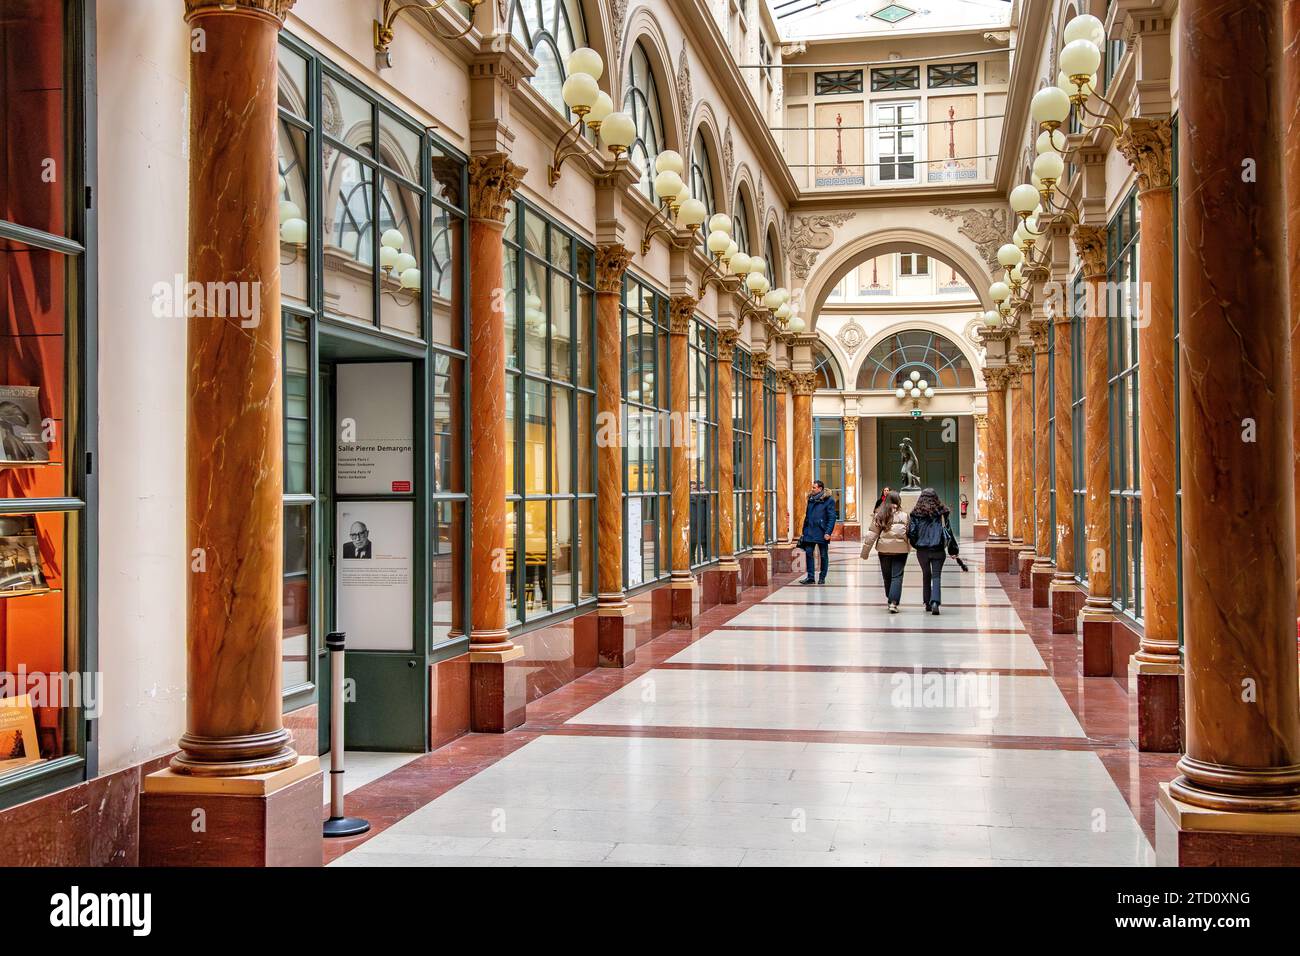 All'interno della Galerie Colbert , questo portico coperto appartiene alla Bibliothèque Nationale, e a differenza di altri portici parigini, non ci sono negozi, Parigi Foto Stock